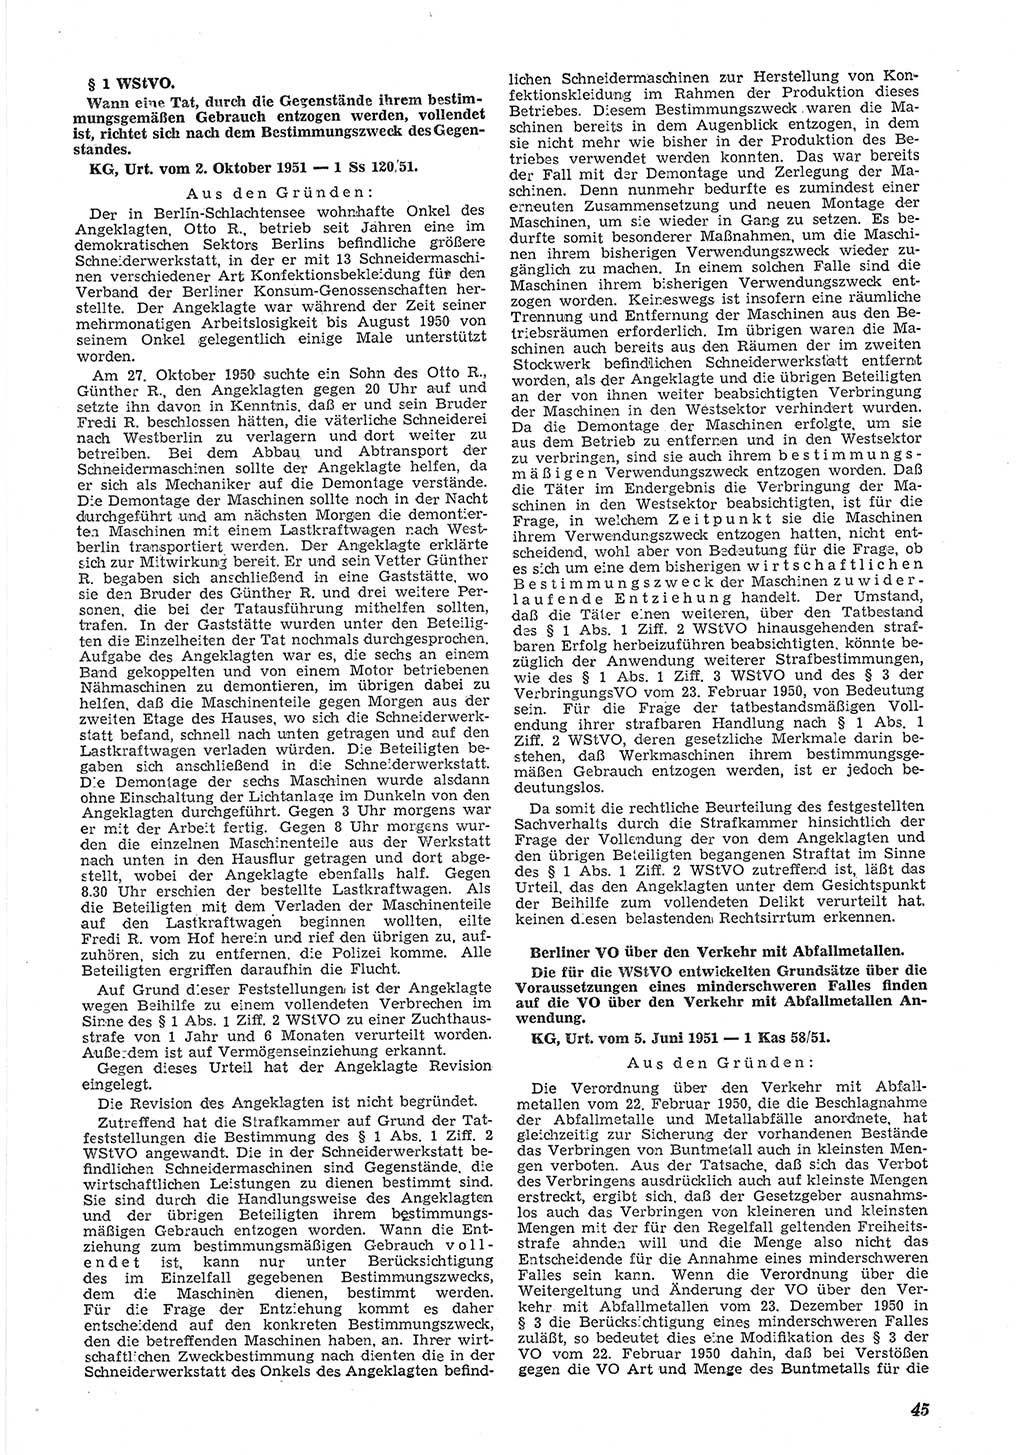 Neue Justiz (NJ), Zeitschrift für Recht und Rechtswissenschaft [Deutsche Demokratische Republik (DDR)], 6. Jahrgang 1952, Seite 45 (NJ DDR 1952, S. 45)